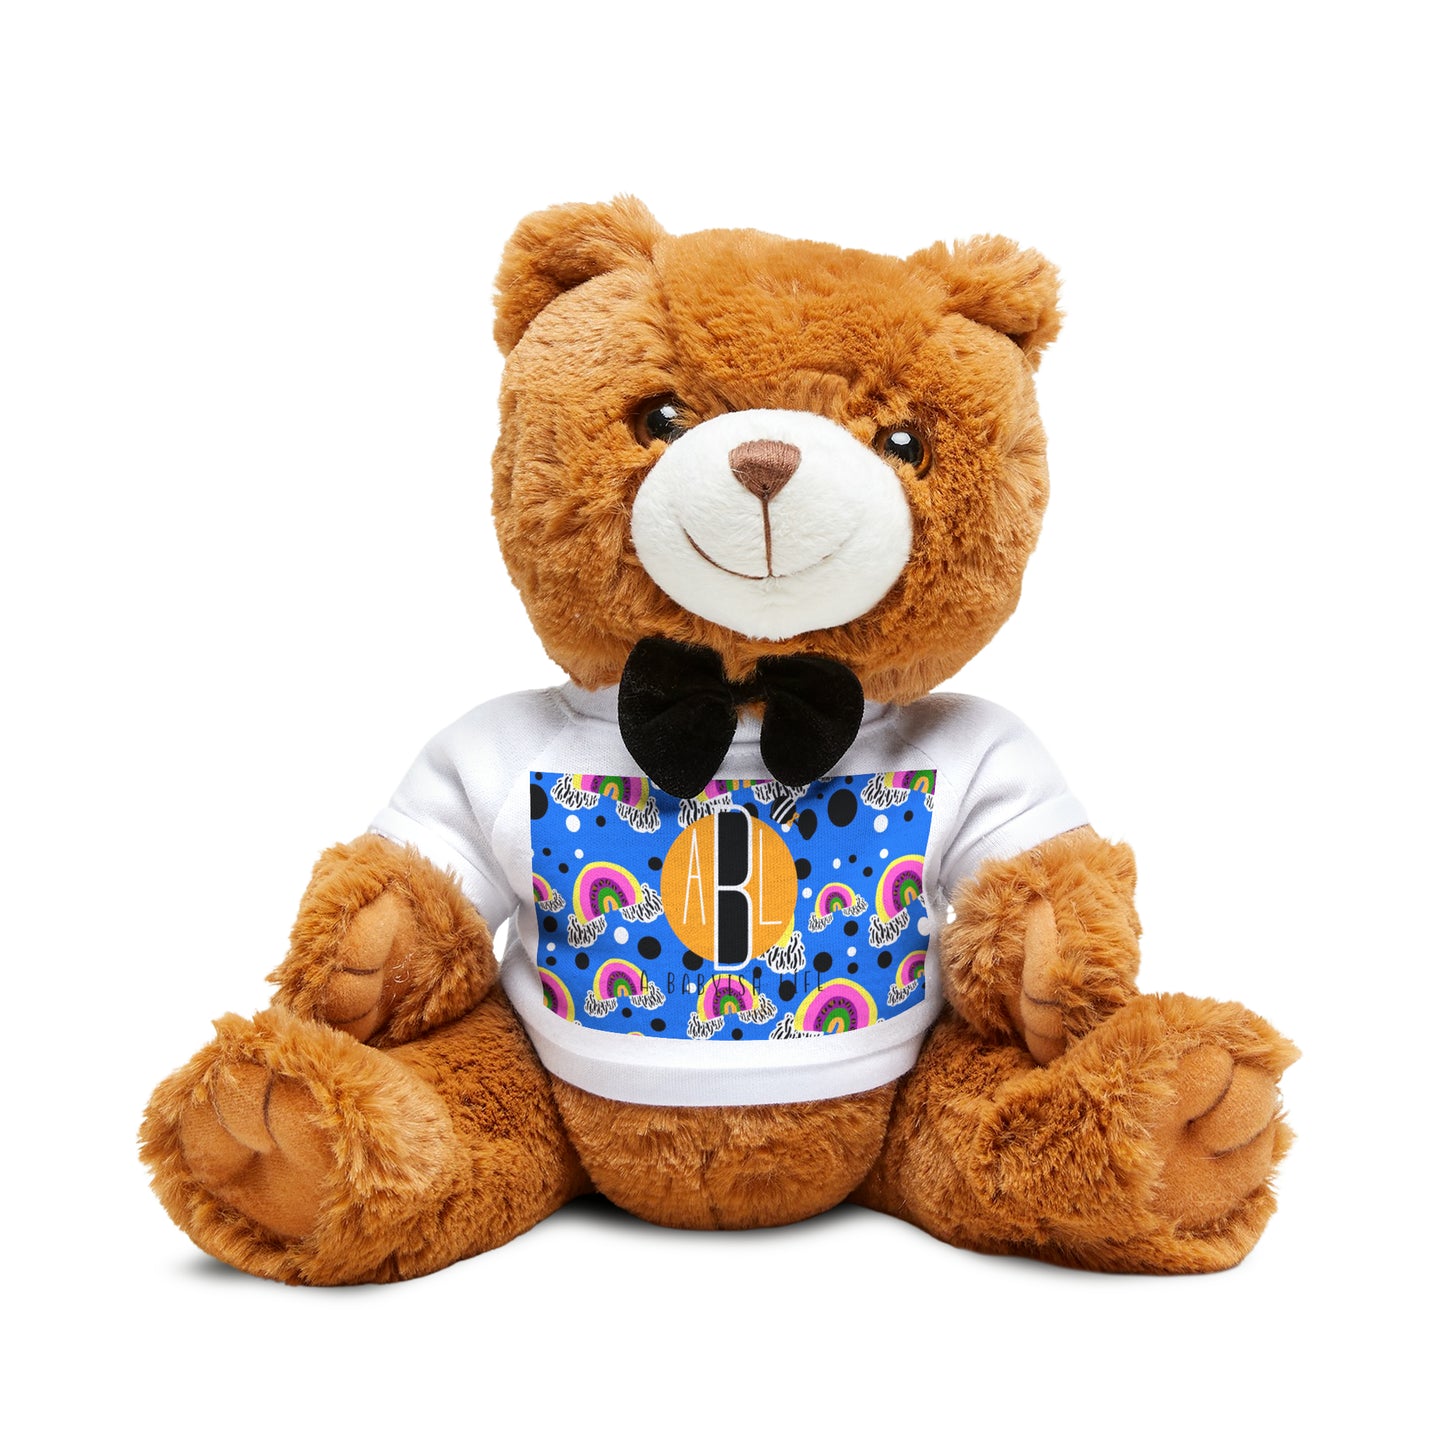 A Babyish Life - Teddy Bear with T-Shirt